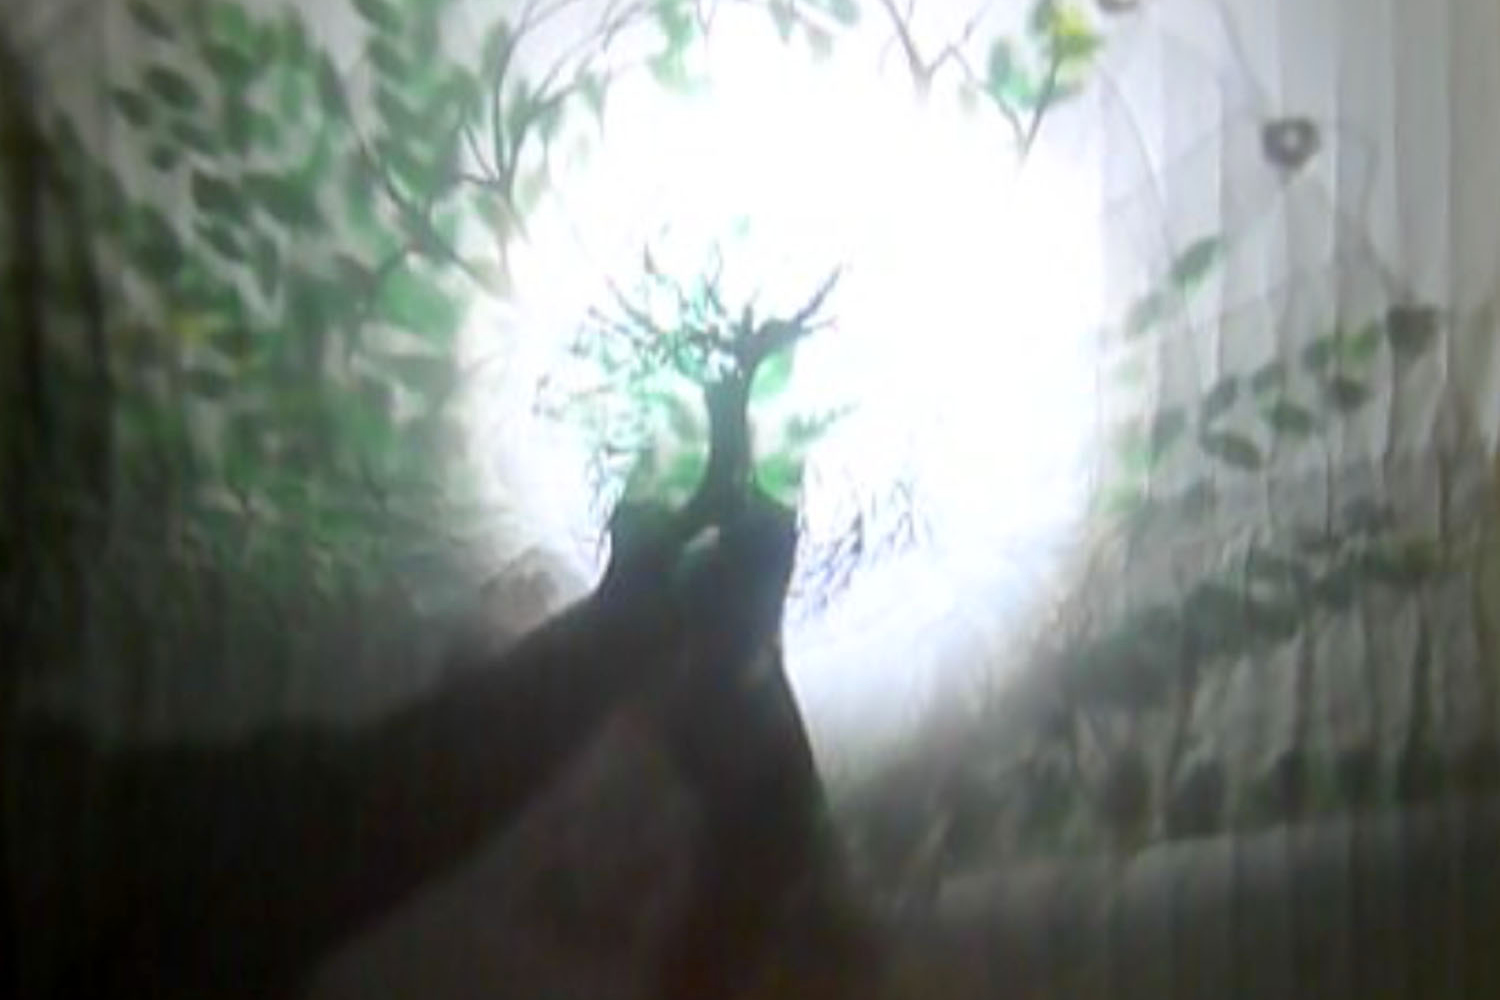 Auf einem weißen Stoff zeichnet sich im Zentrum des Bildes der schemenhafte Schatten eines kleinen Baumes ab, der von zwei Händen hochgehalten wird. Hinter dem Stoff befindet sich eine runde Lichtquelle.